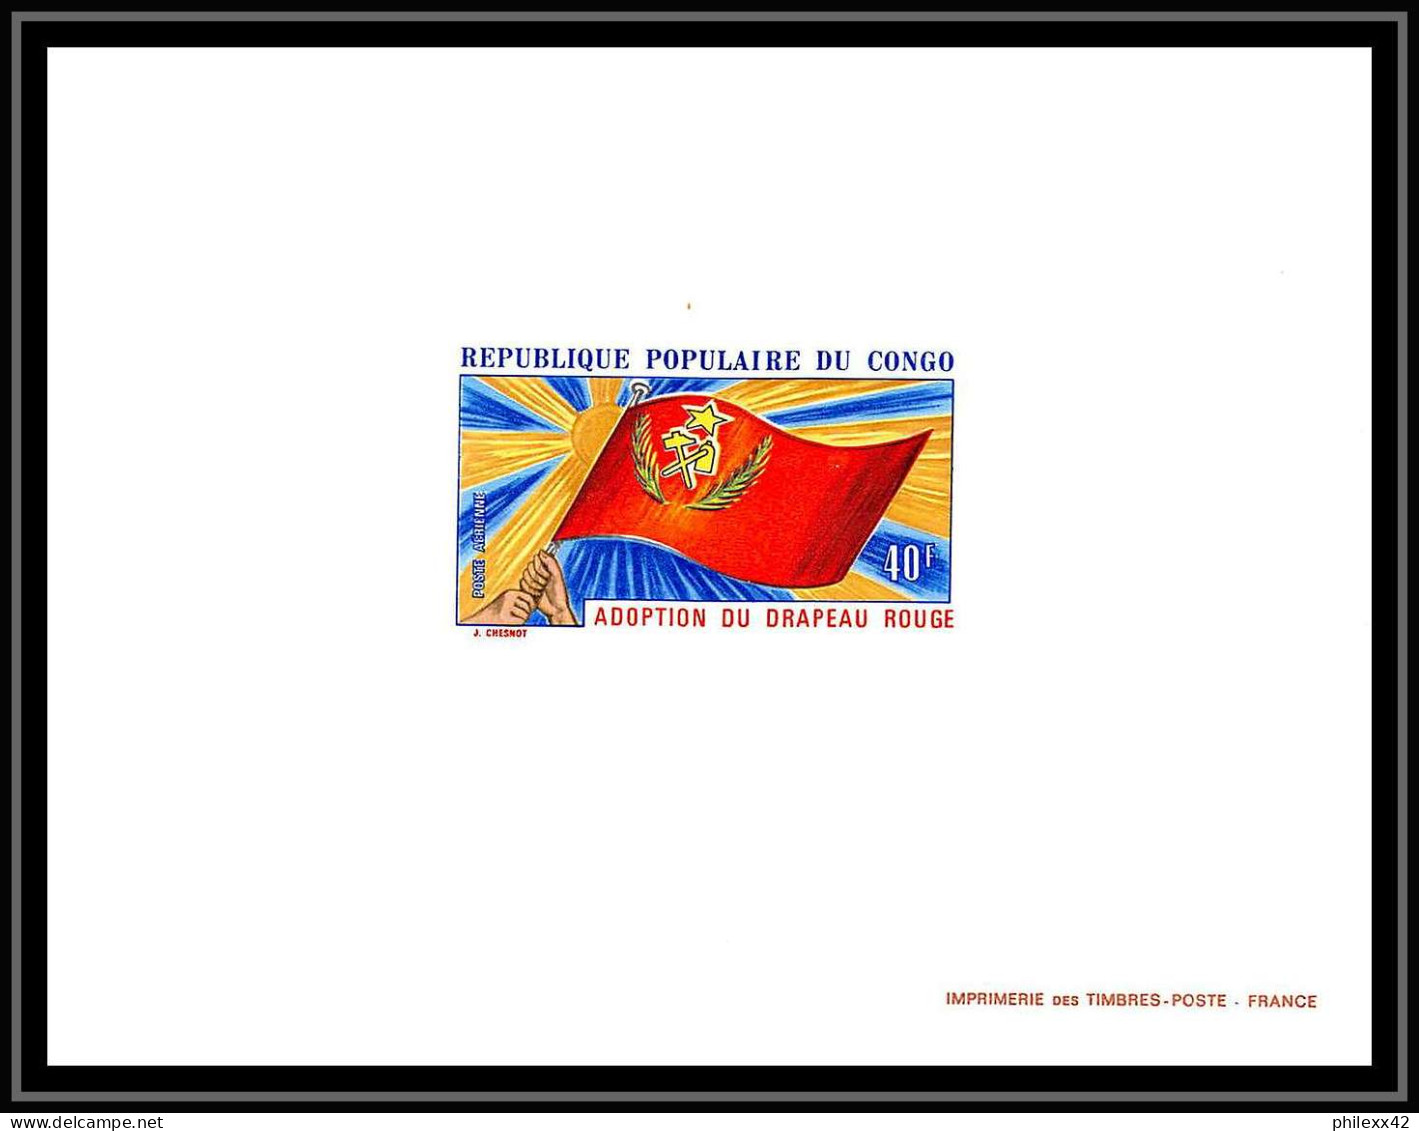 0576a Epreuve De Luxe Deluxe Proof Congo Poste Aerienne PA N°141 Drapeau Rouge FLAG Communisme - Mint/hinged